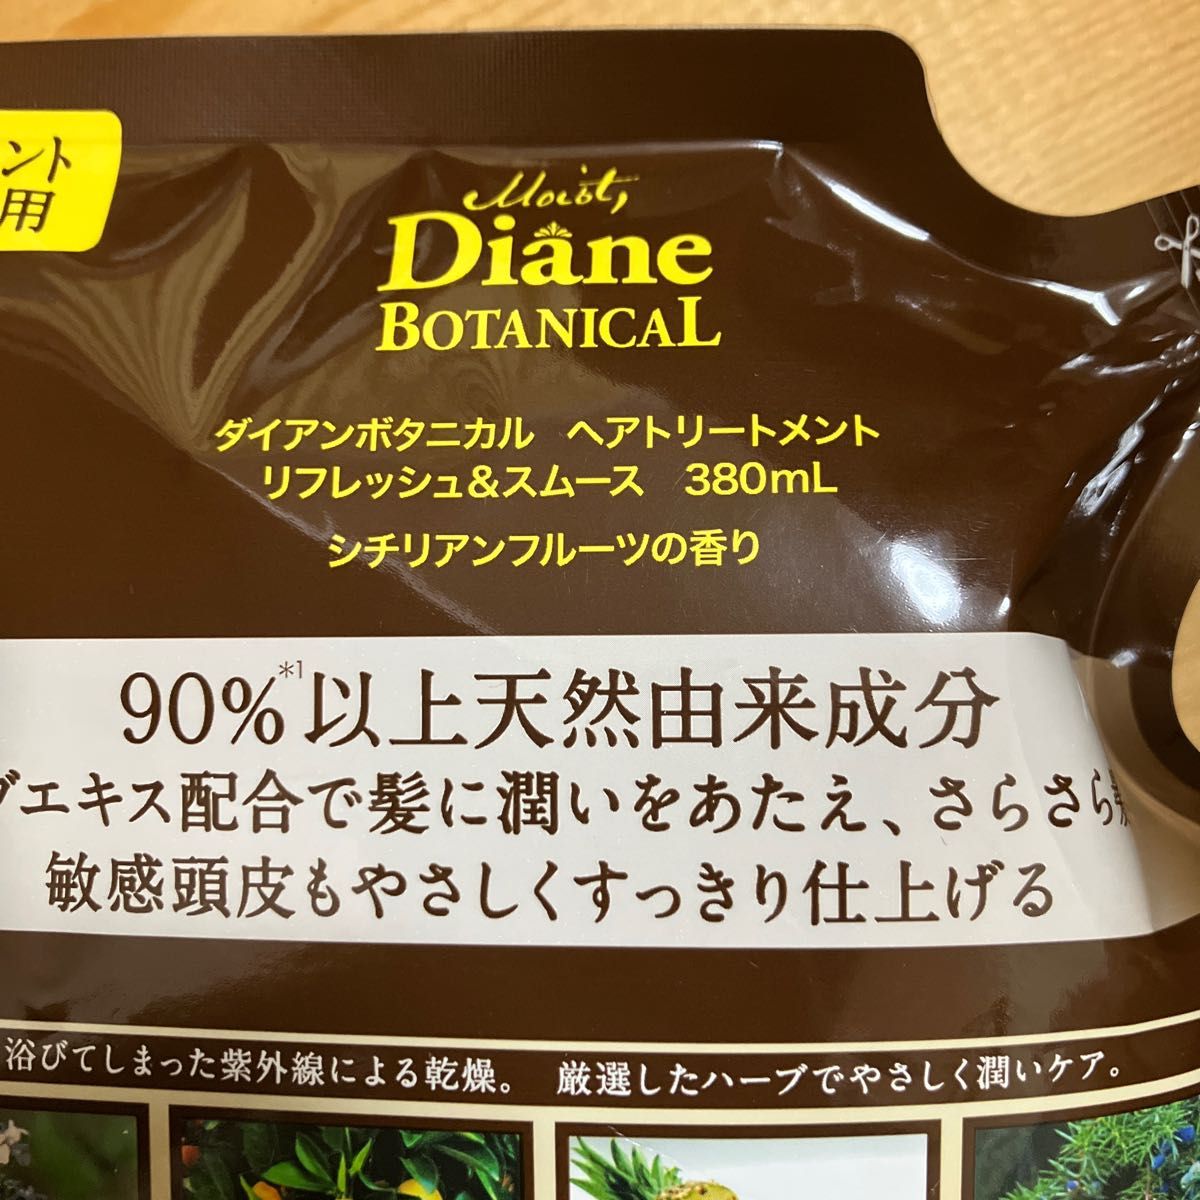 超美品 Diane ボタニカル シチリアンフルーツの香り シャンプートリートメント